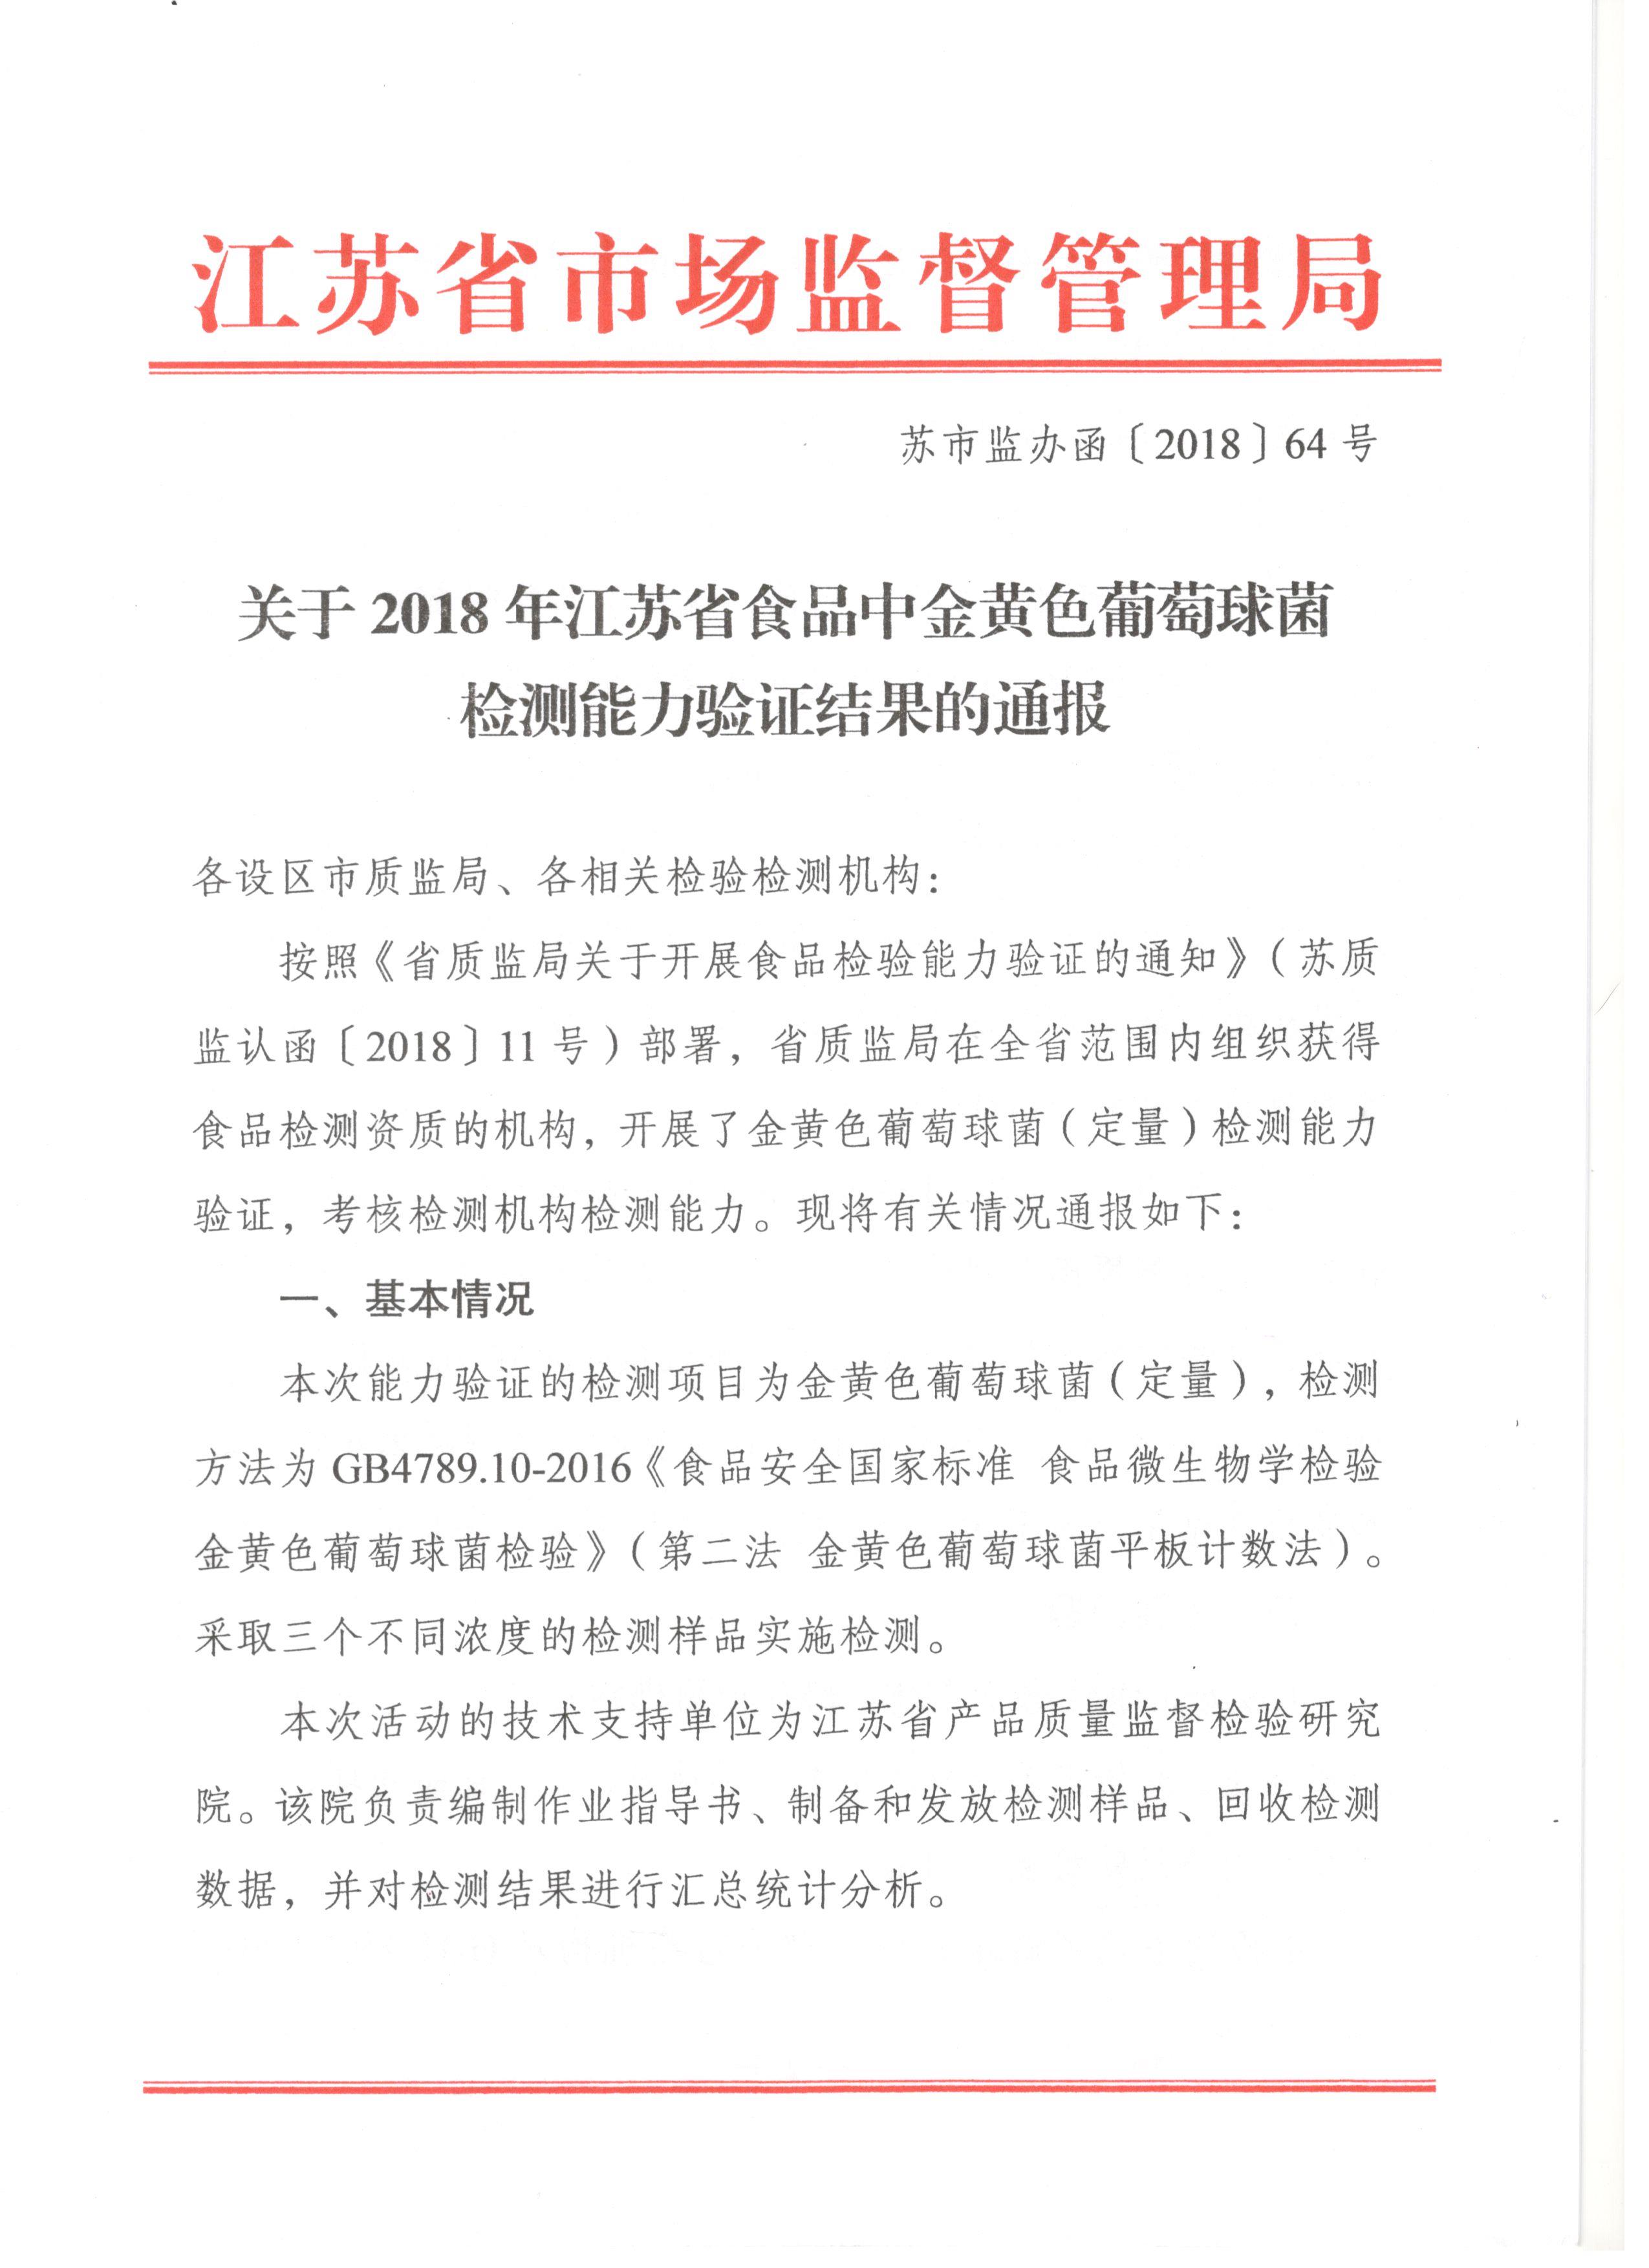 世谱检测通过江苏省市场监督管理局组织的铅和金黄色葡萄球菌能力验证